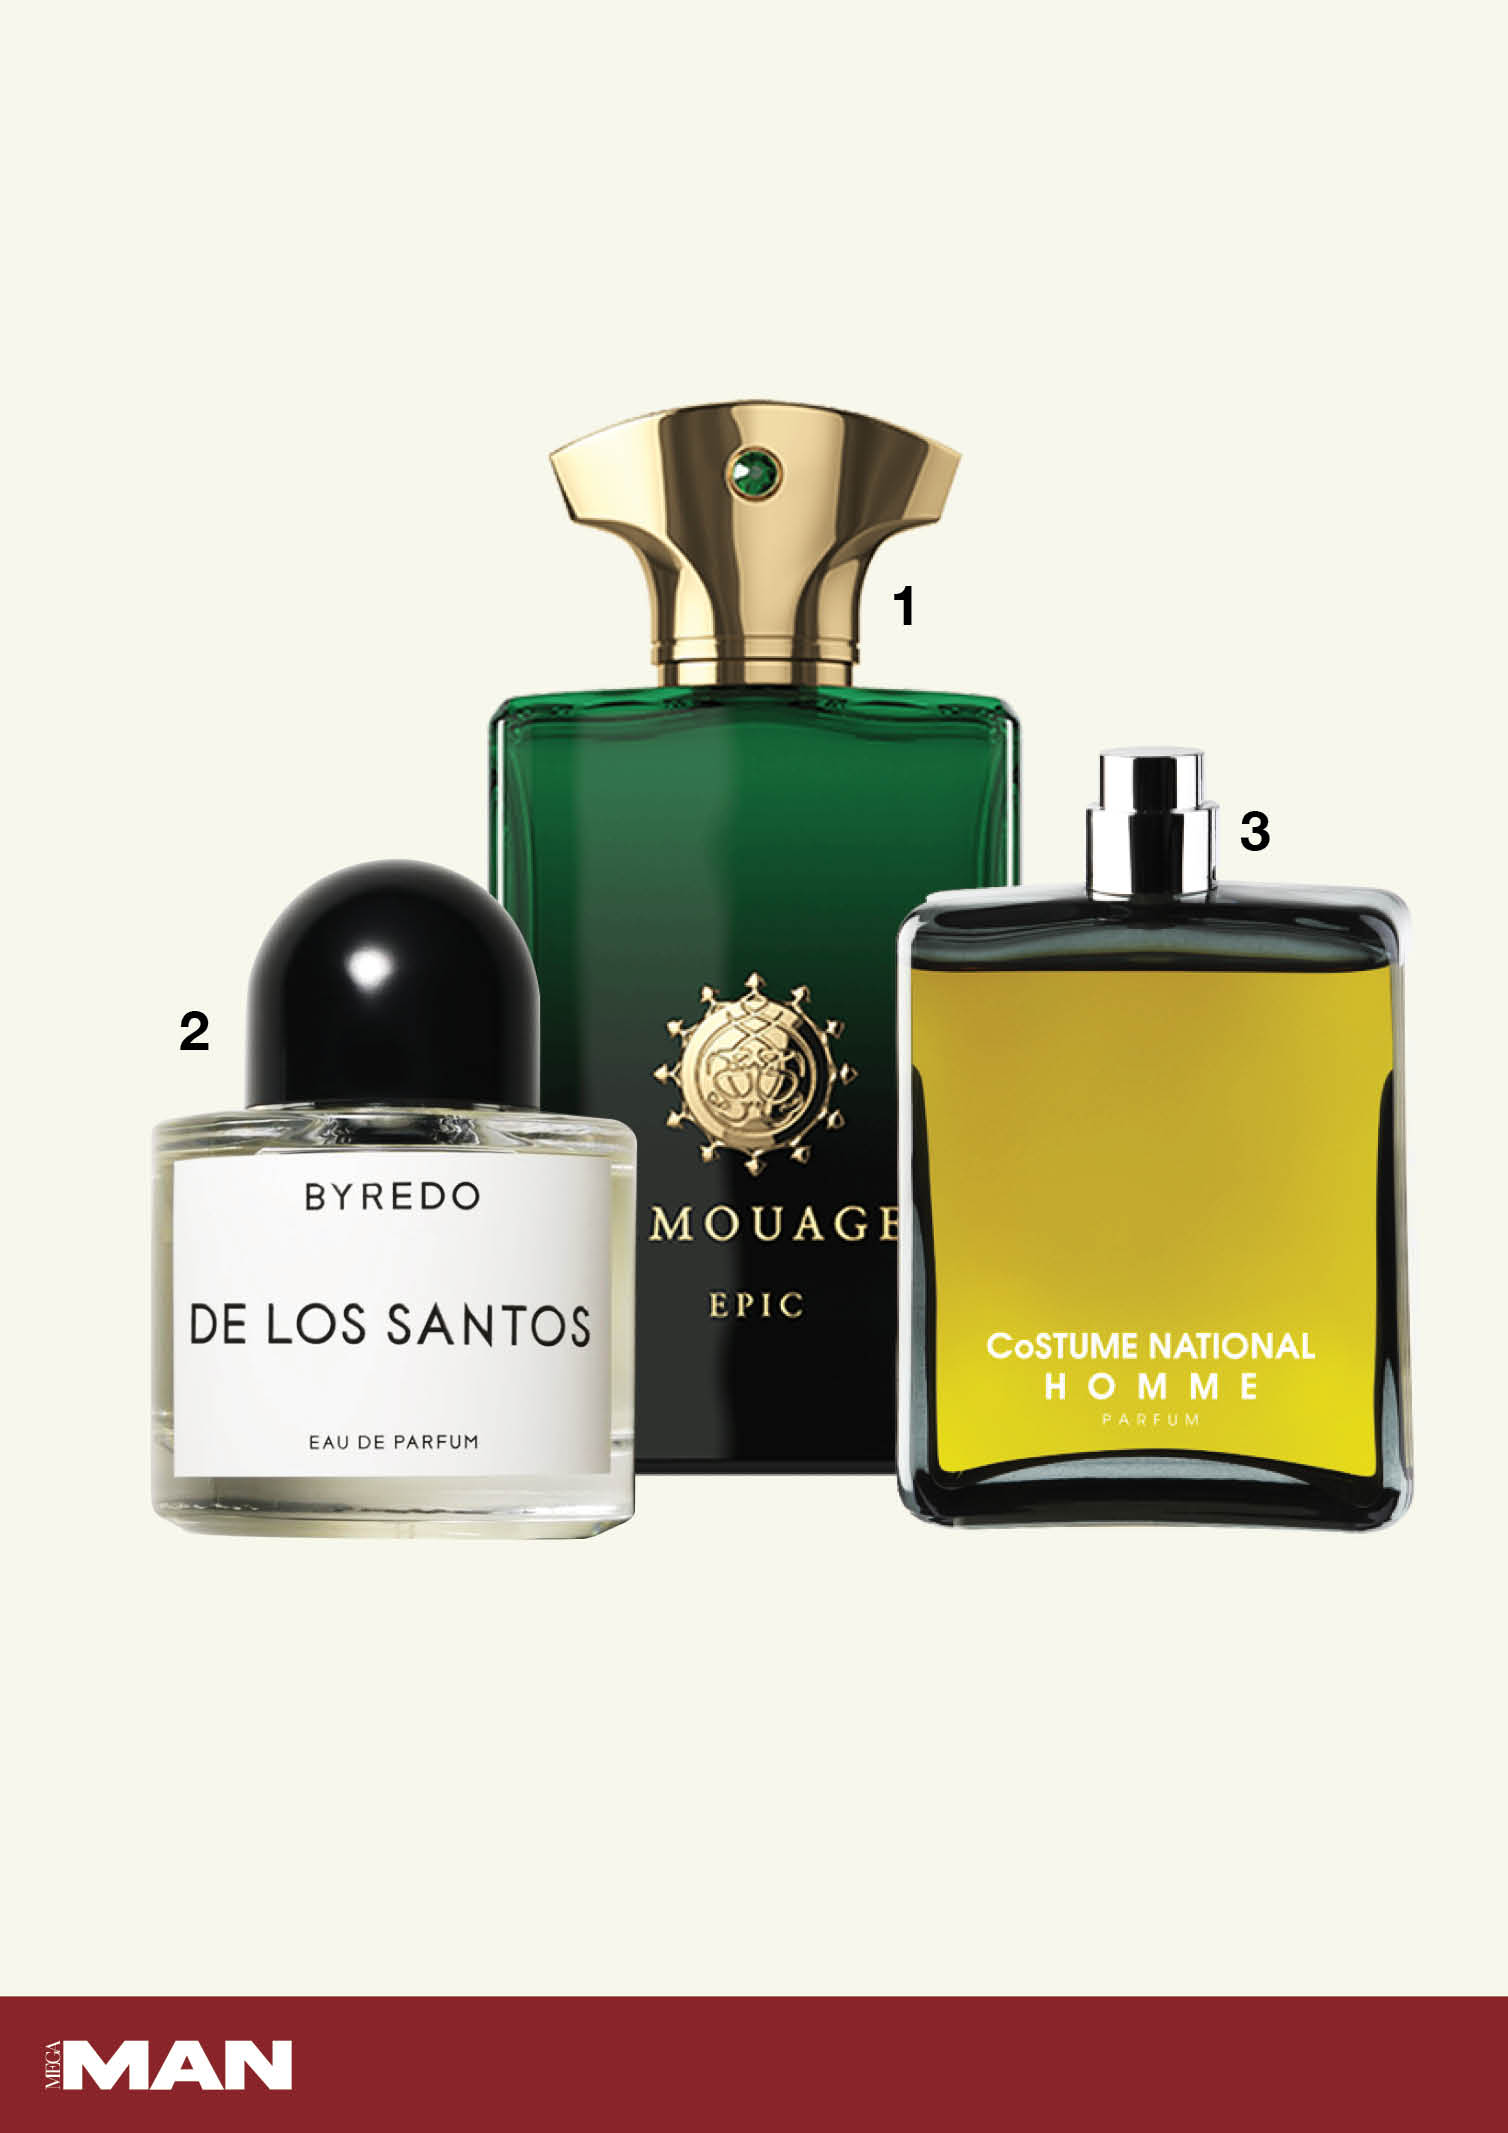 Epic Man by Amouage, De Los Santos by Byredo, Eau de Parfum CoSTUME National fragrances